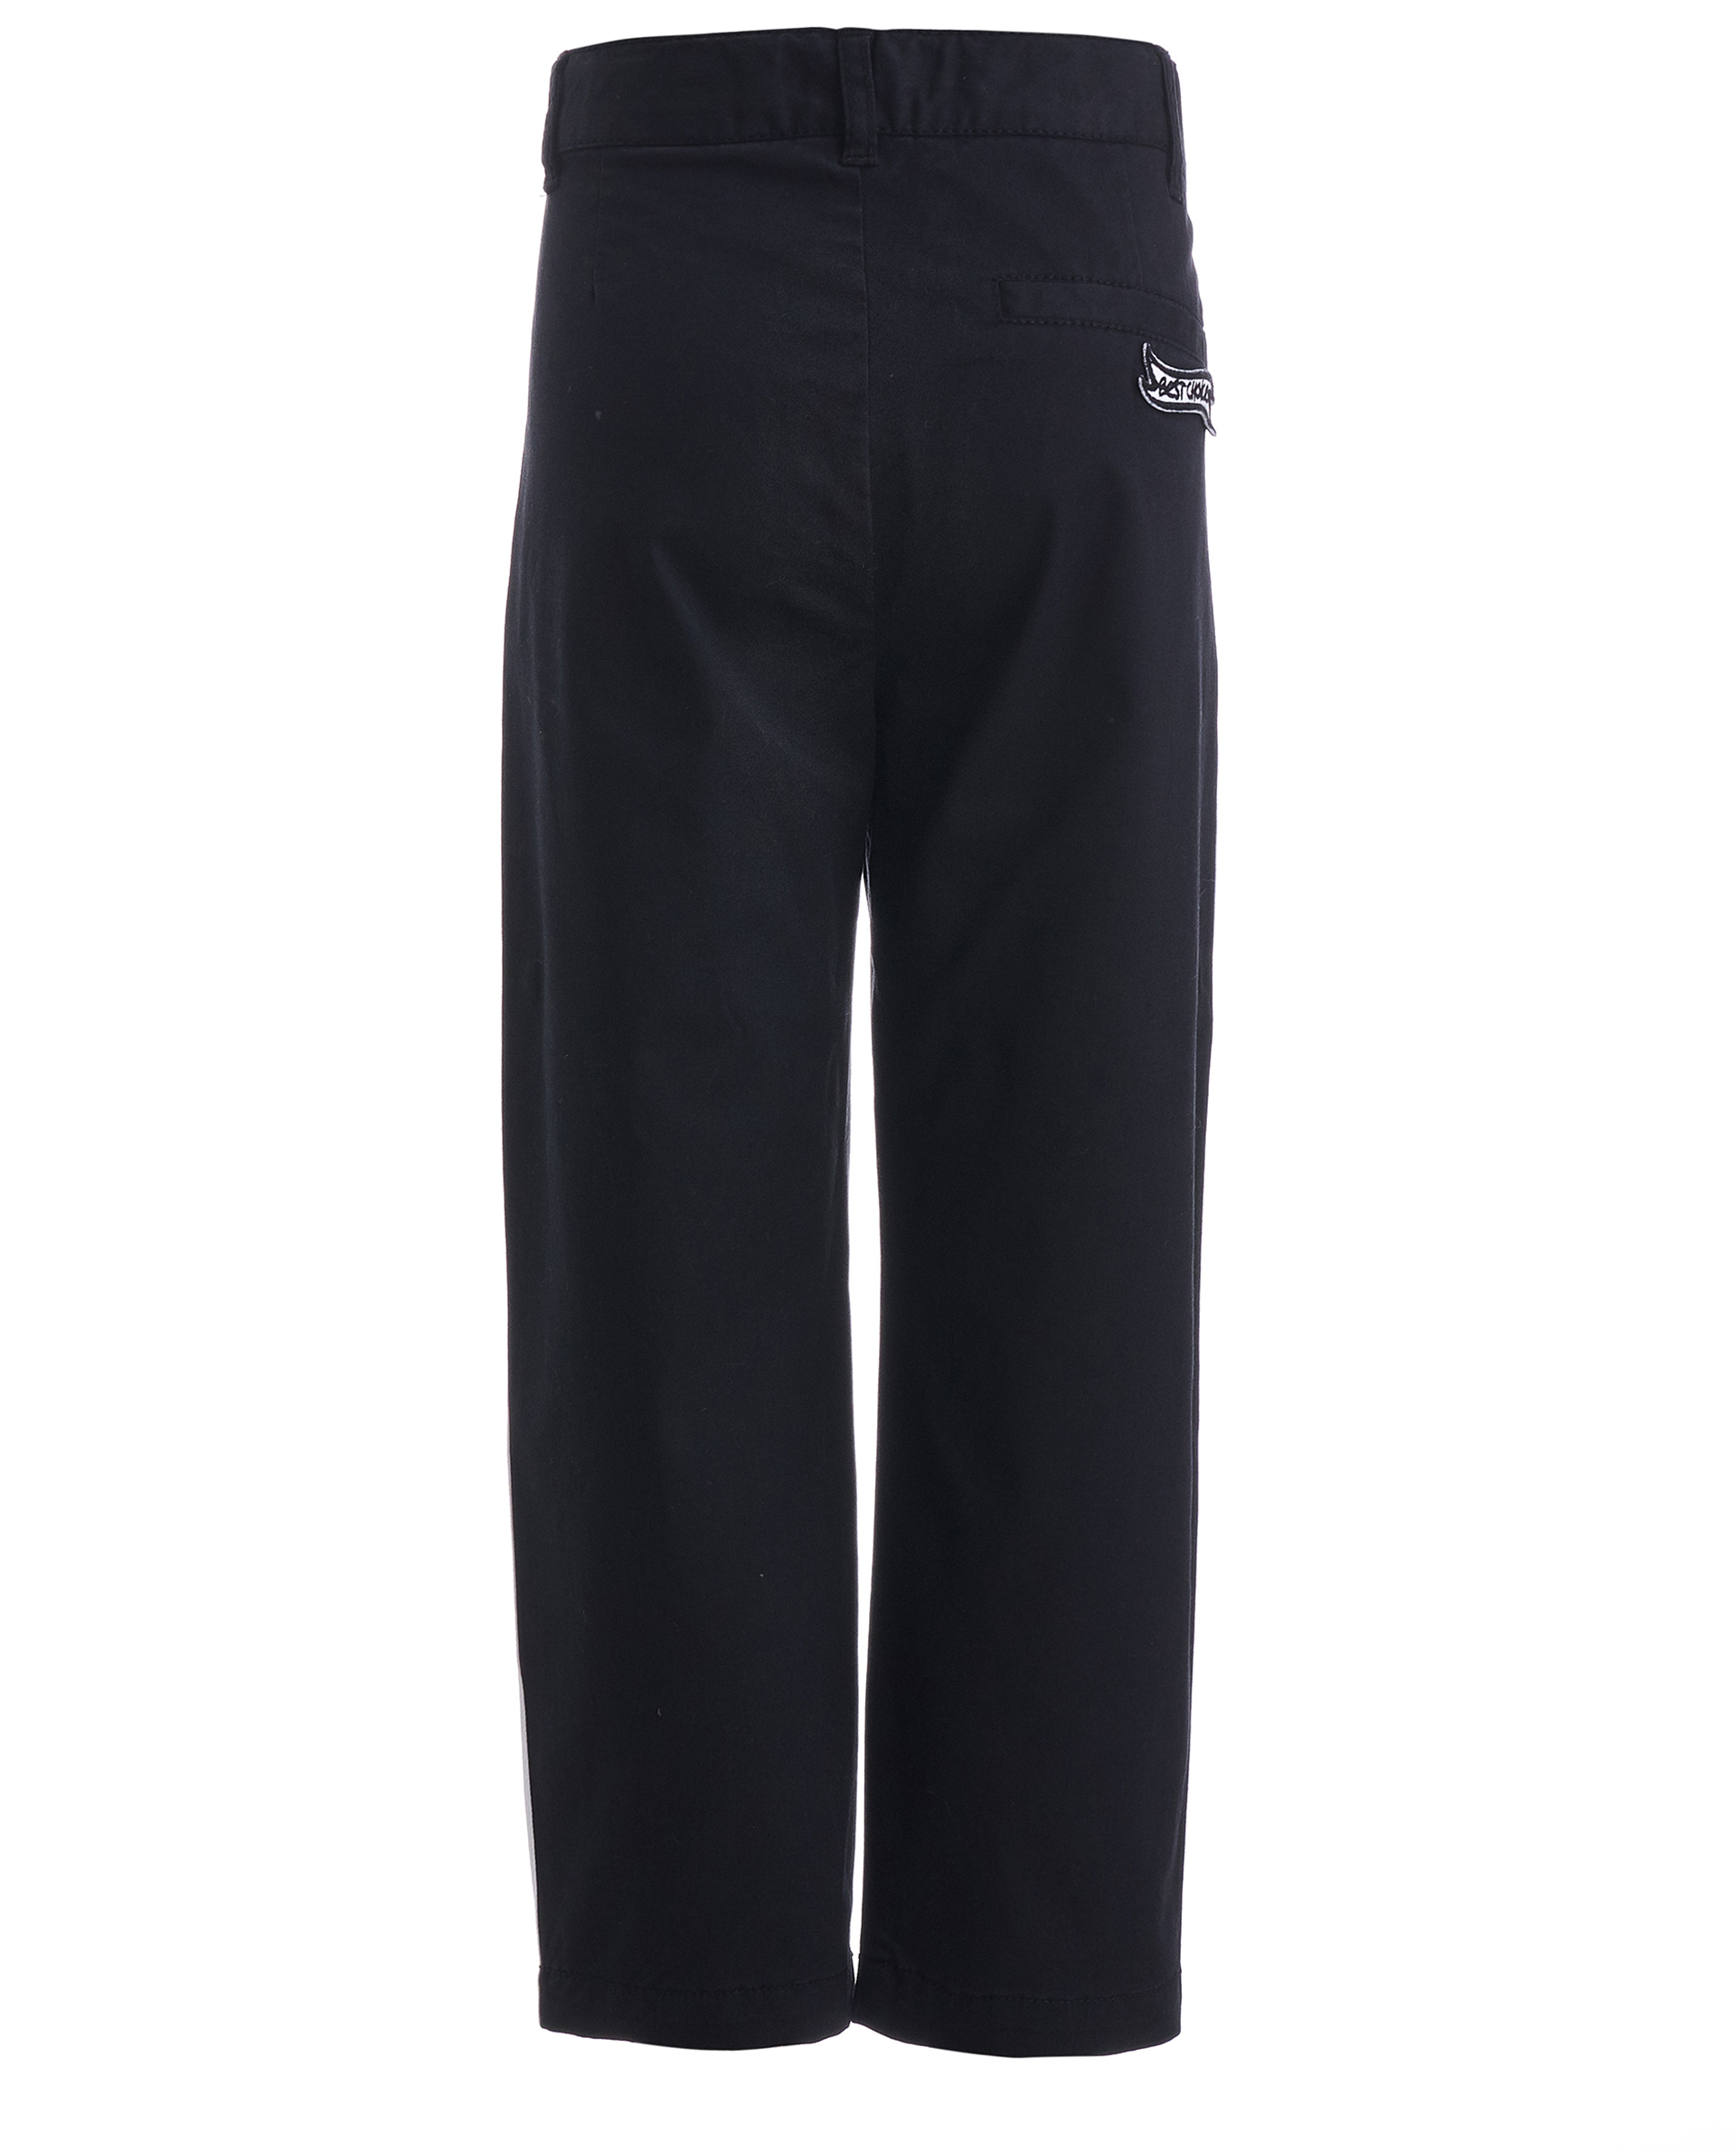 Черные брюки с лампасами Gulliver 11905BMC6301, размер 98, цвет черный - фото 2